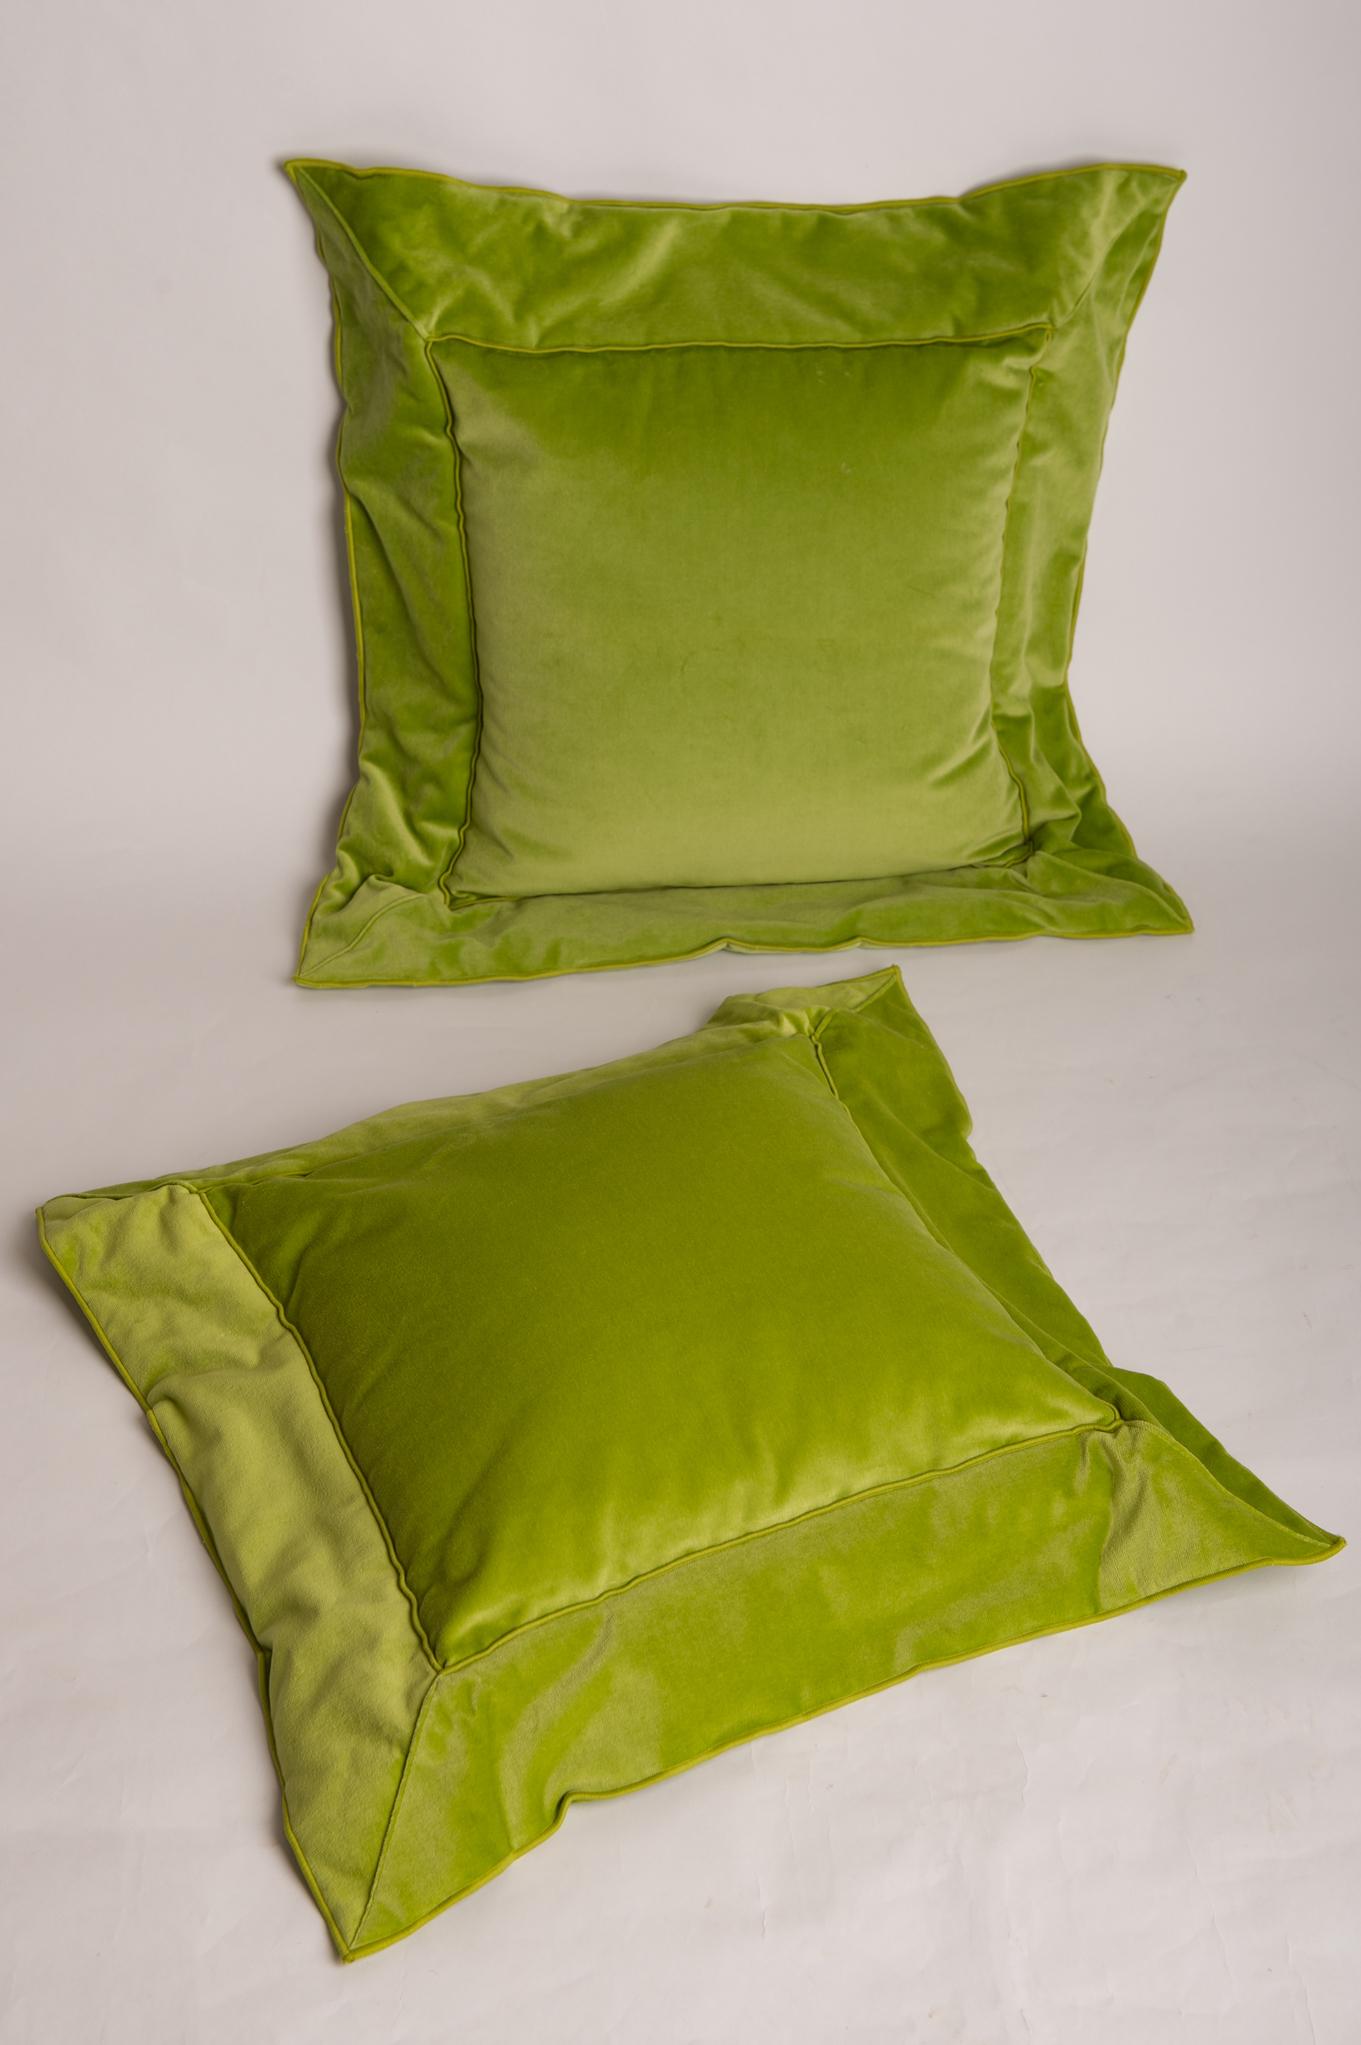 Diese Kissen wurden von einer berühmten Schweizer Werkstatt (an deren Namen ich mich nicht erinnere) mit einem wunderschönen grünen Samt hergestellt.
Größe sind cm. 40 x 40 (pad) mit einem 12 cm. Band rundum.

